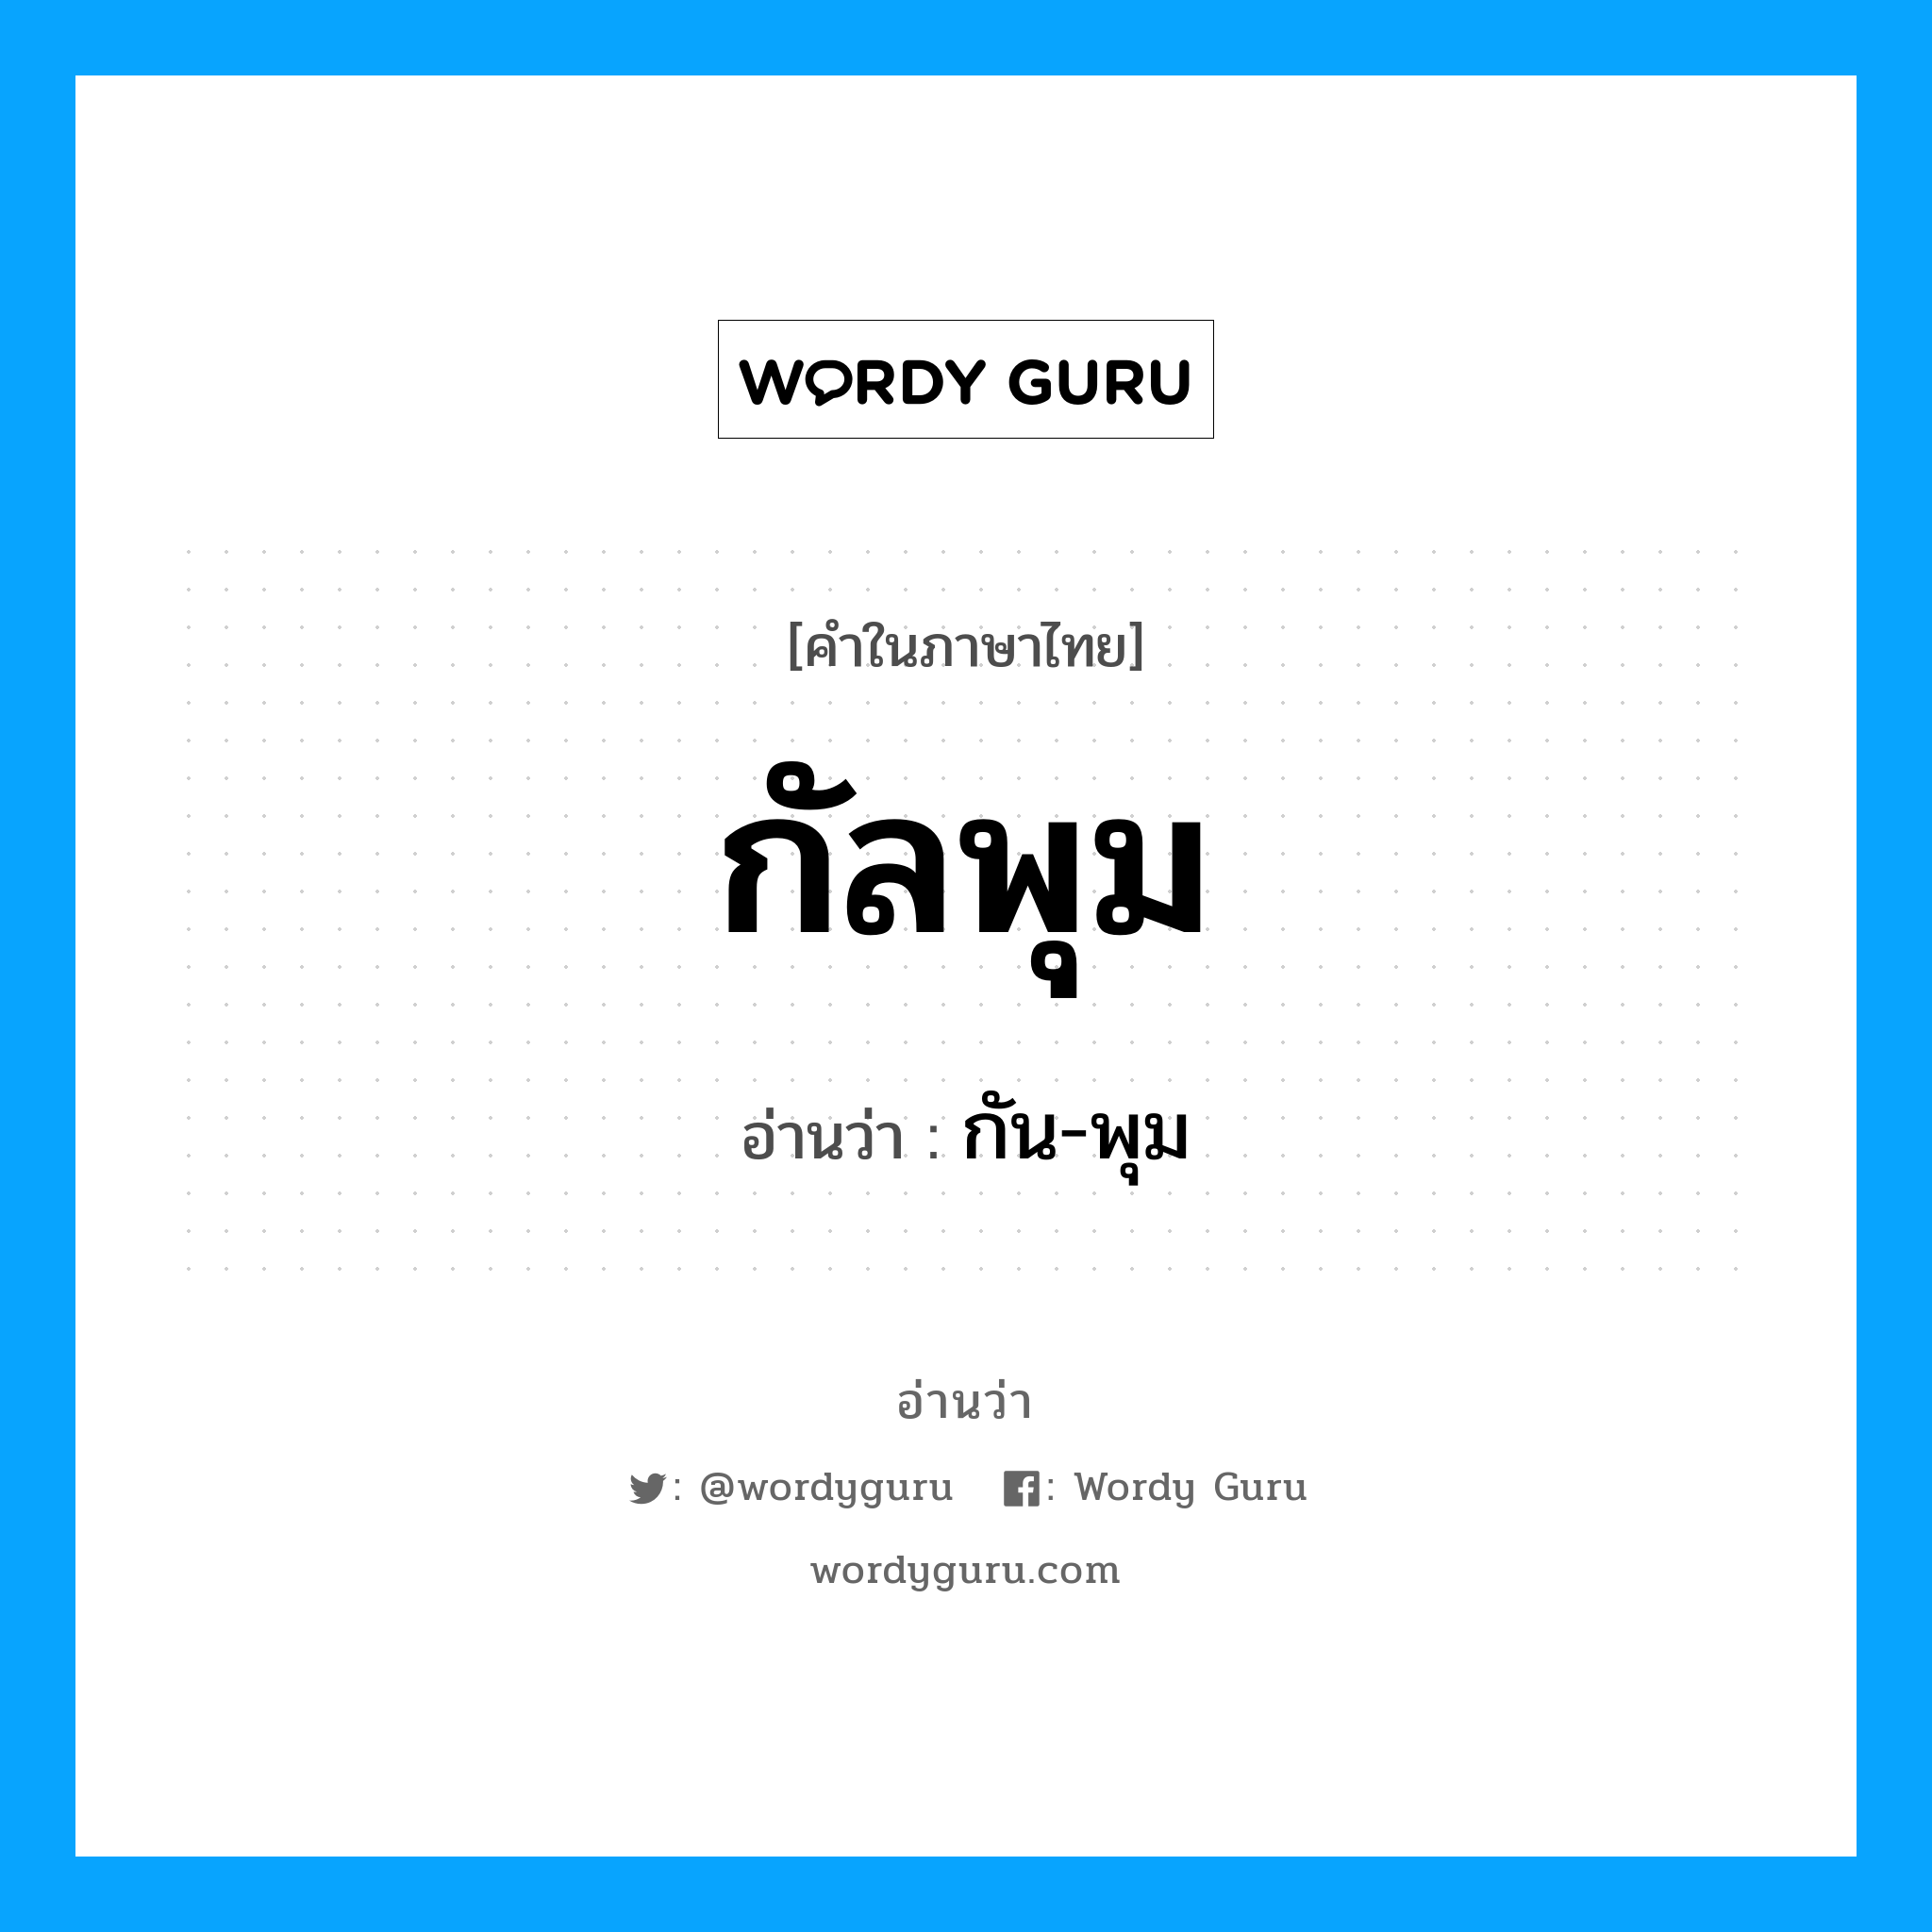 กัน-พุม เป็นคำอ่านของคำไหน?, คำในภาษาไทย กัน-พุม อ่านว่า กัลพุม